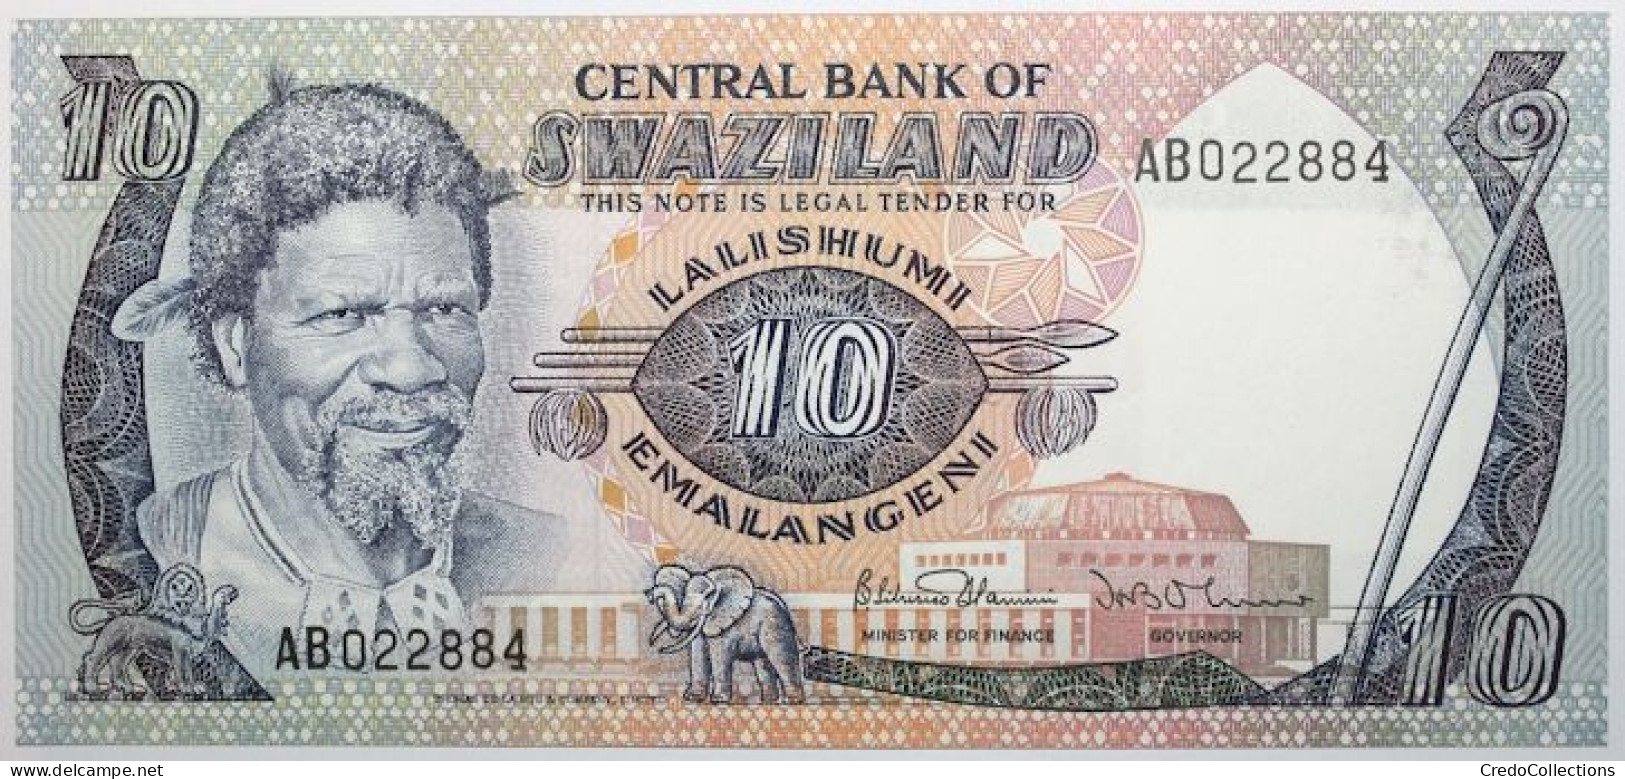 Swaziland - 10 Emalangeni - 1985 - PICK 10c - NEUF - Swasiland